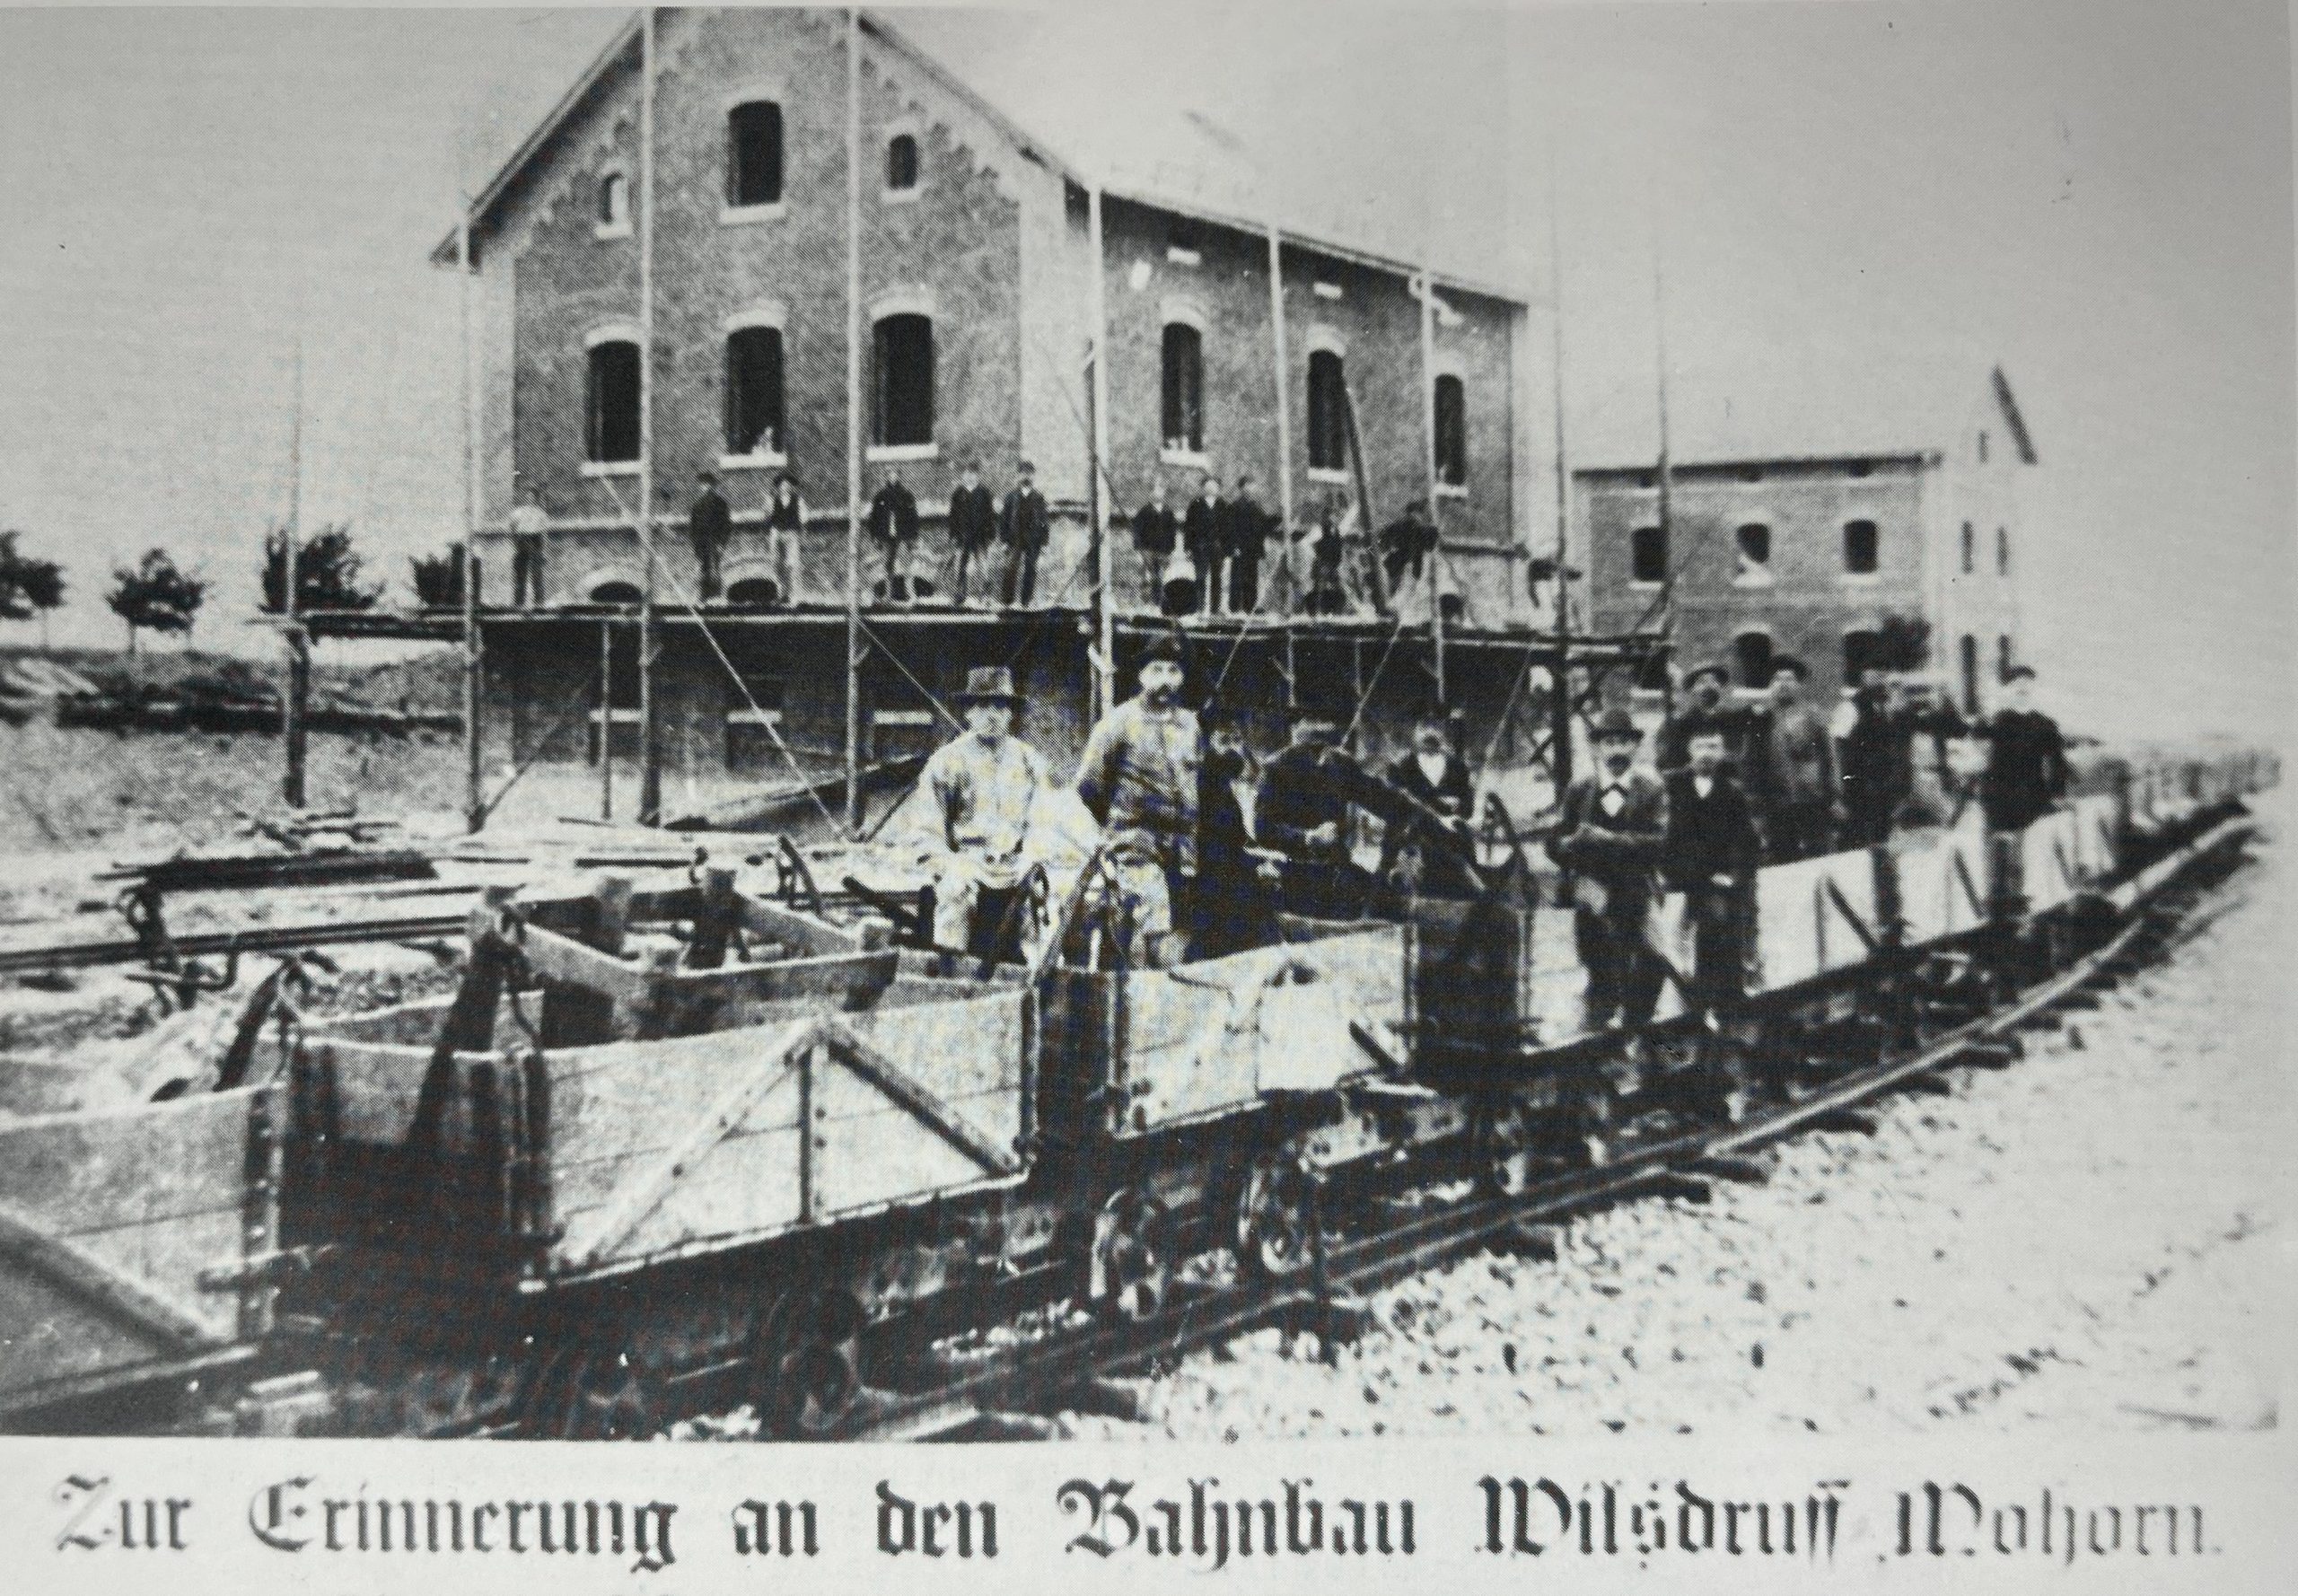 Bahnbau Wilsdruff - Mohorn, Sammlung P. Wunderwald